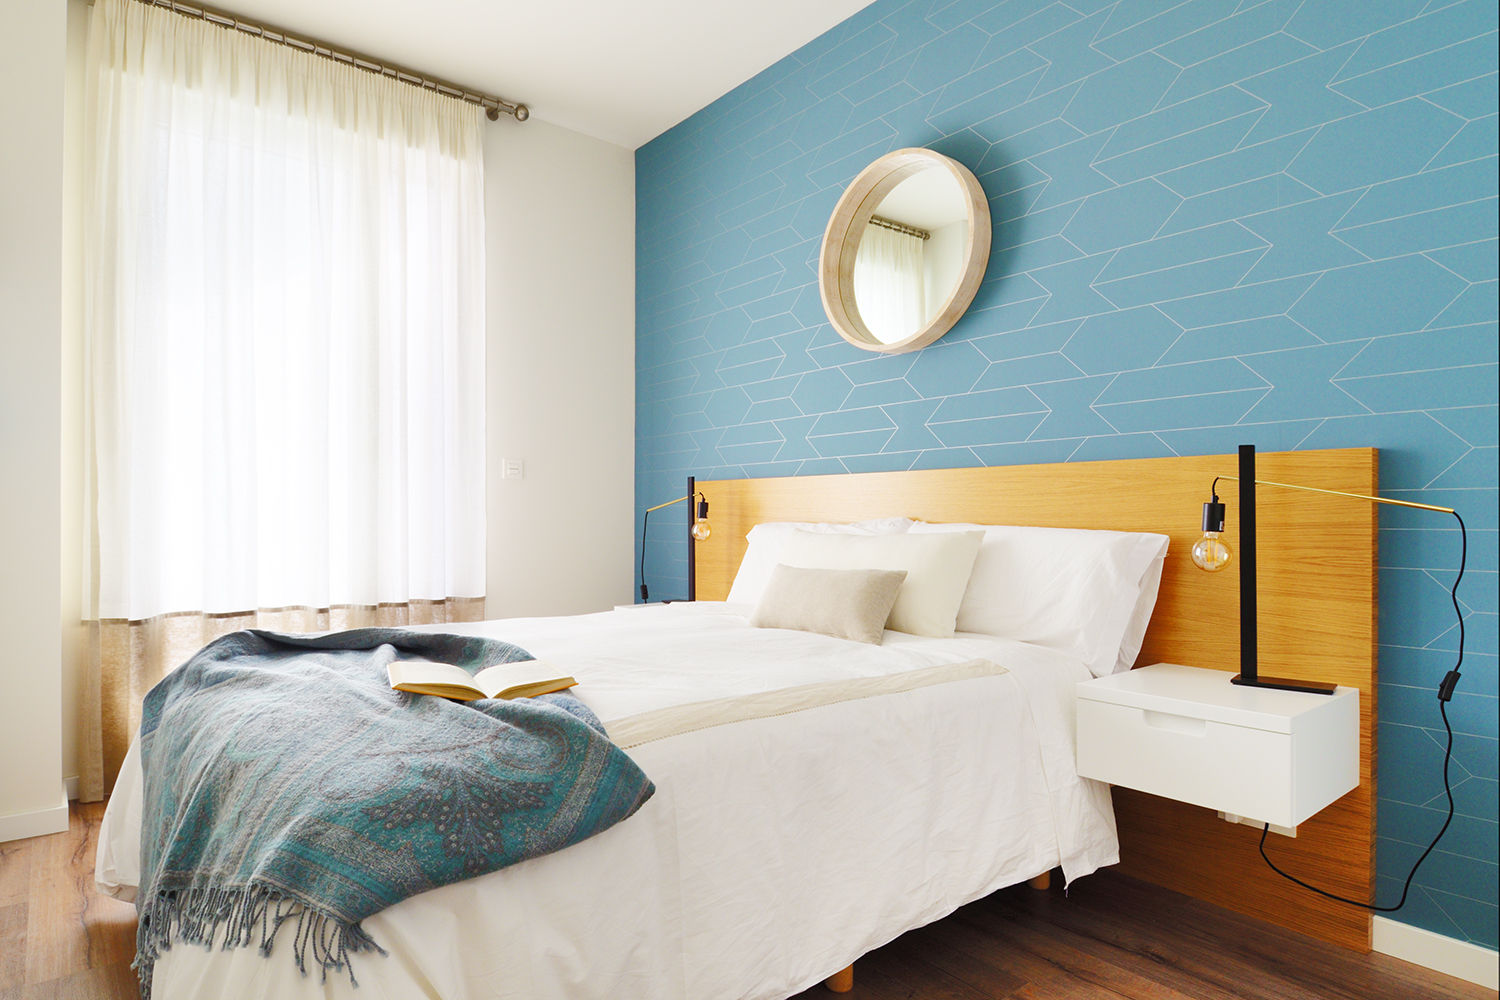 Color favorito: el azul Noelia Villalba Interiorista Dormitorios de estilo escandinavo Propiedad,Muebles,Edificio,Comodidad,Azur,Madera,Textil,Sombra,Diseño de interiores,Almohada